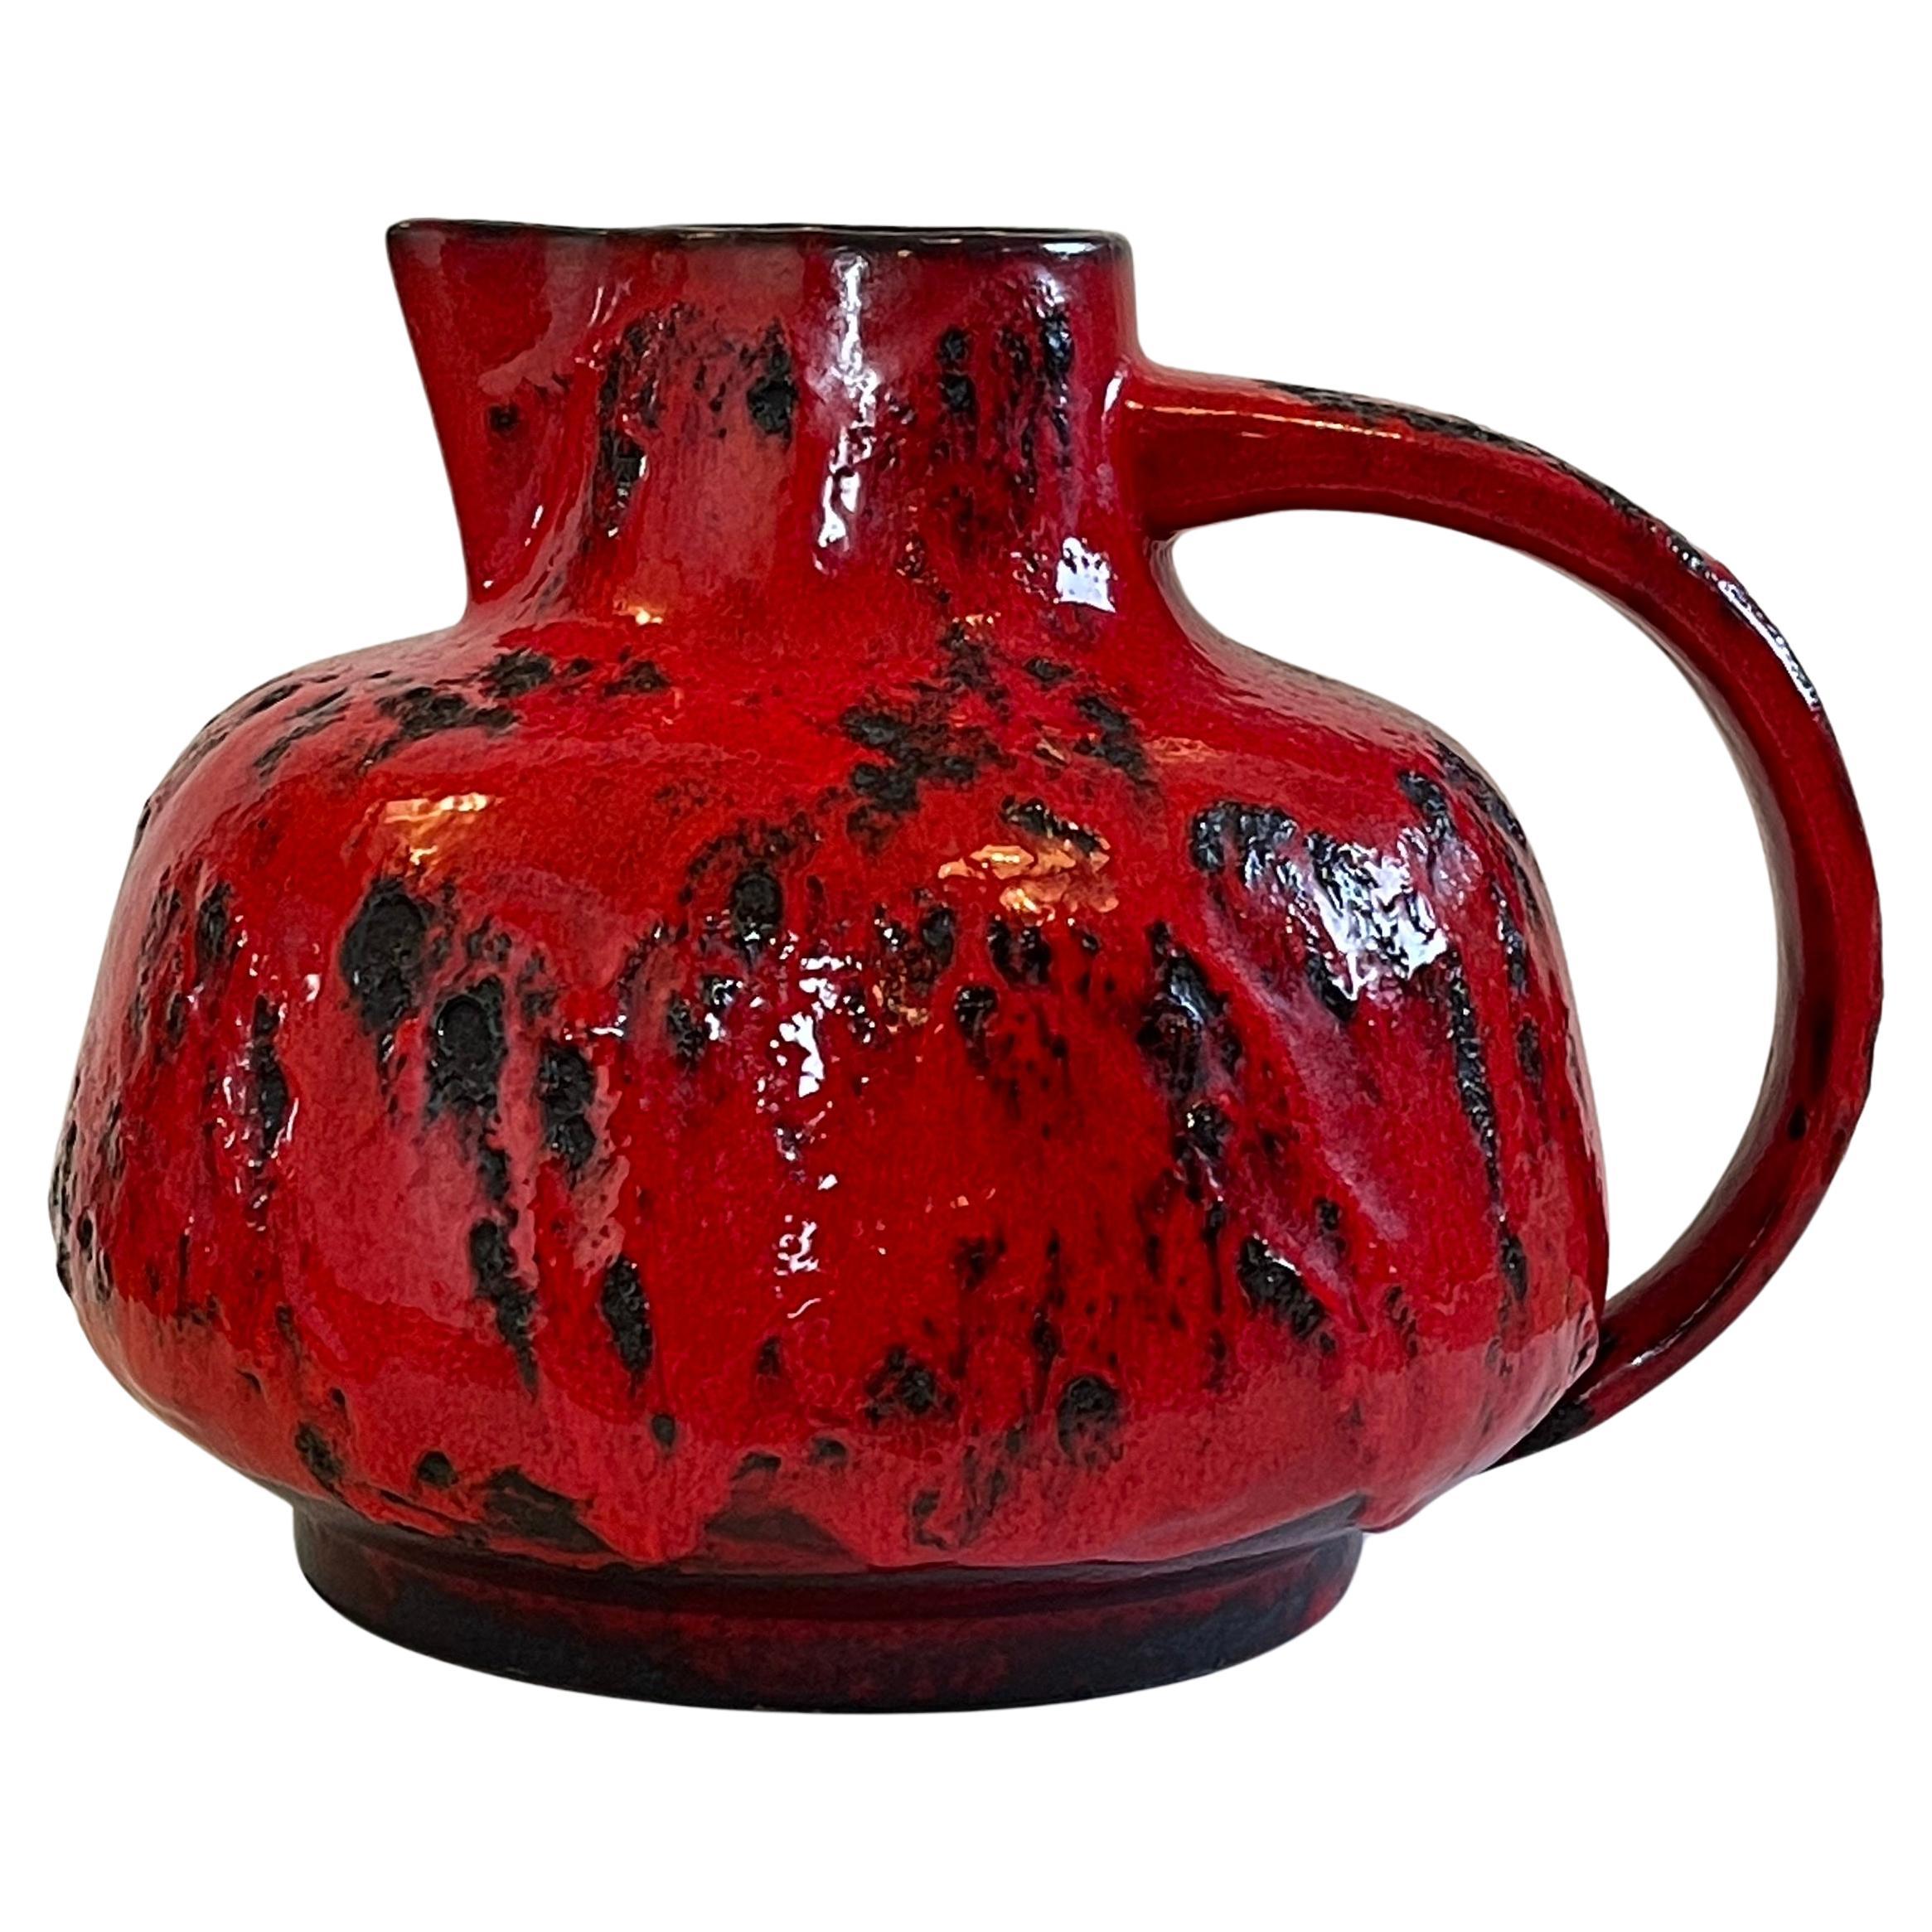 Ausdrucksstarke und sehr große deutsche handgefertigte Keramikvase oder Krug aus der Mitte des Jahrhunderts in einem beeindruckenden klobigen und feurigen Rot.
Fette Lava